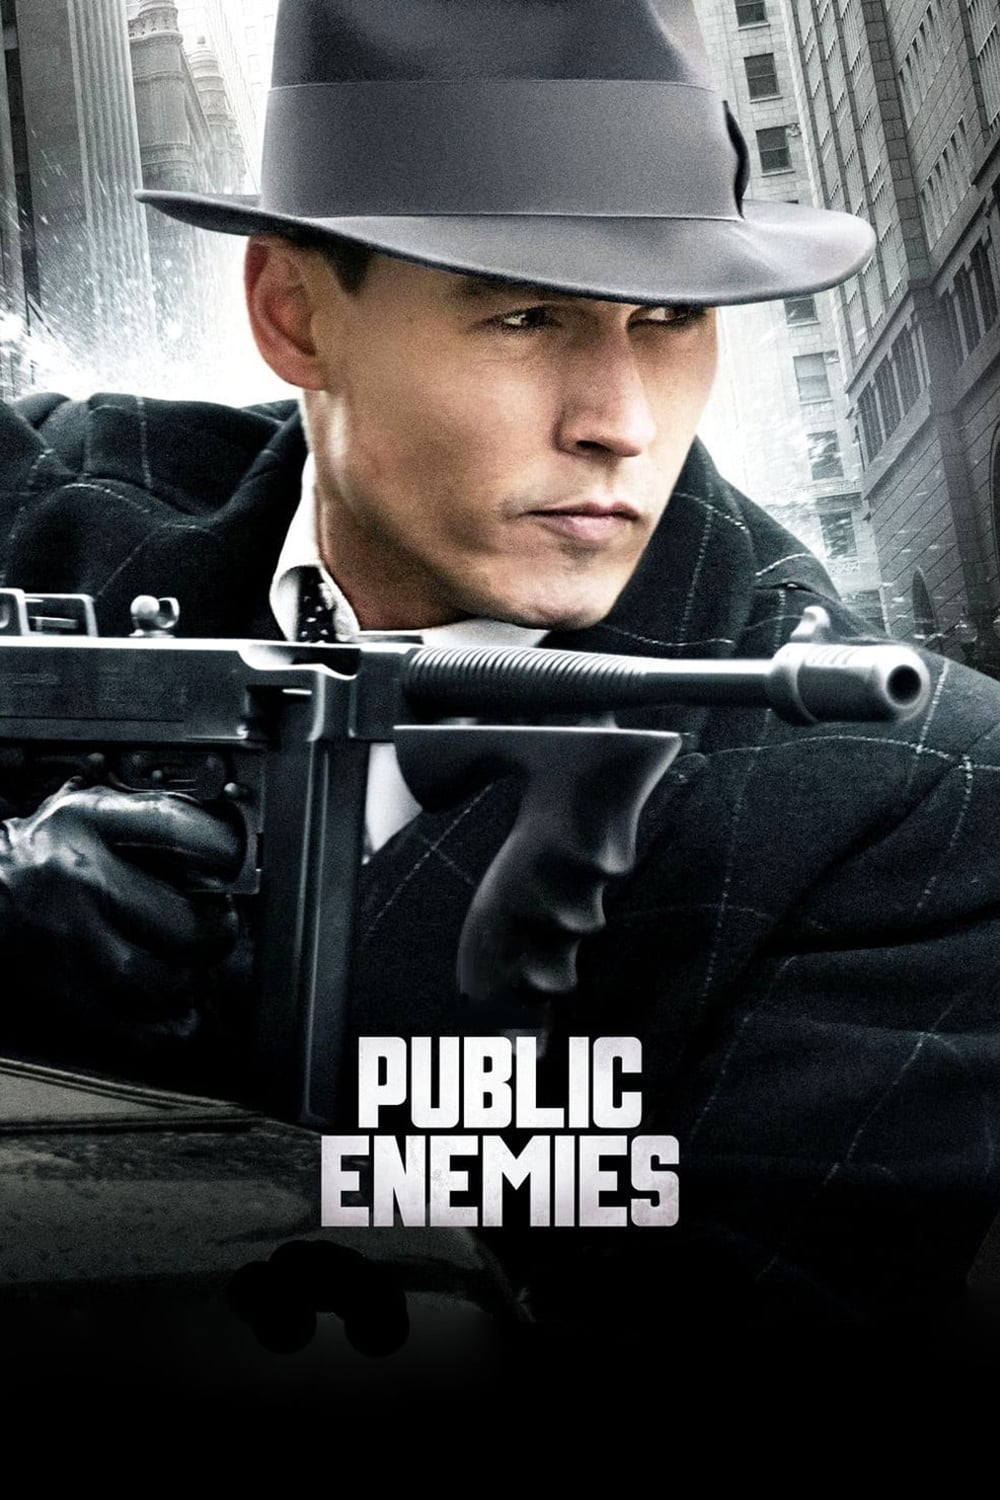 Inimigos Públicos (2009)